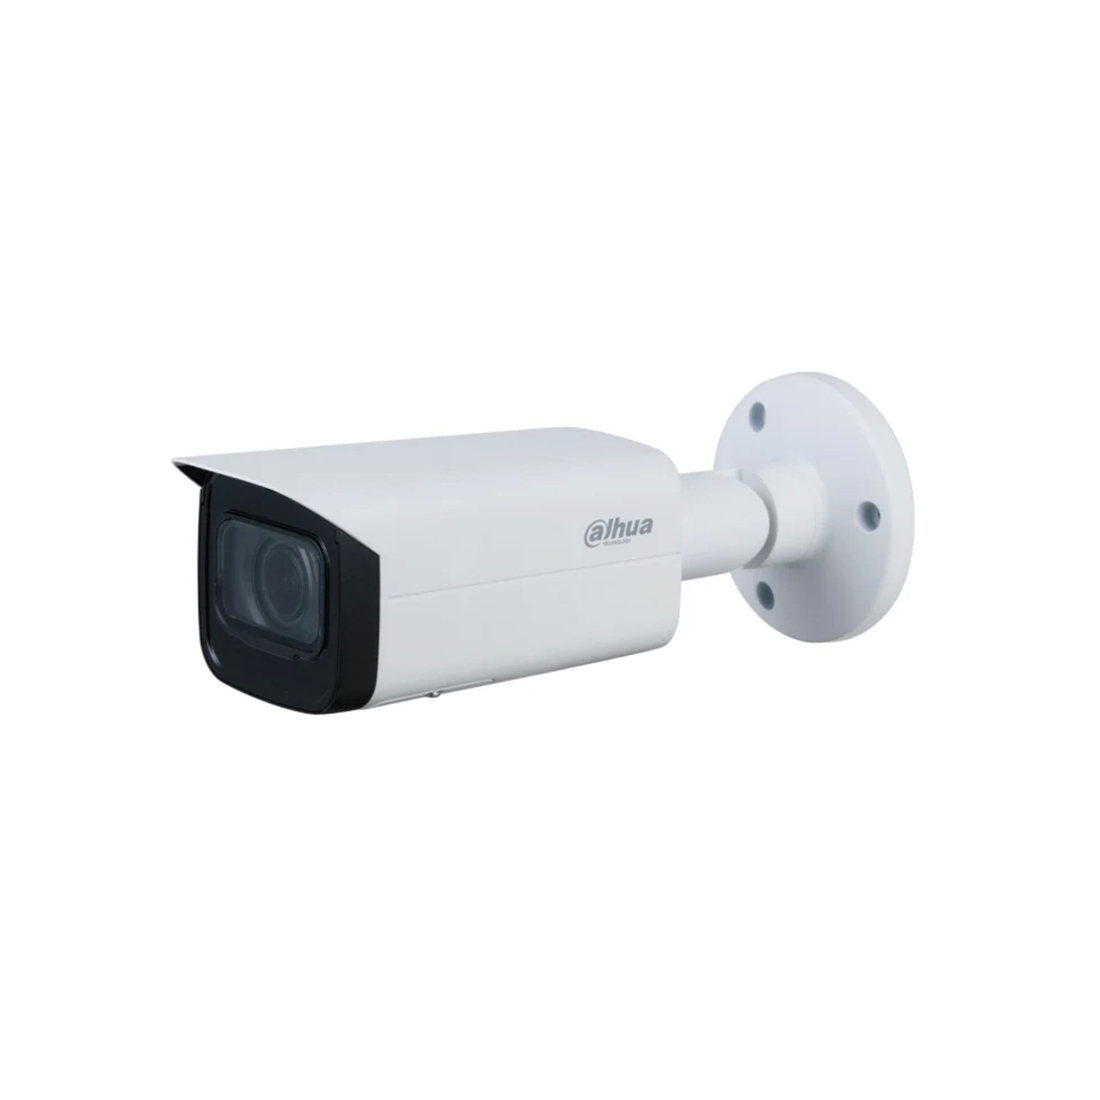 IP видеокамера, Dahua, DH-IPC-HFW1230T1P-ZS-2812, цилиндрическая 2-мегапиксельная ИК-вари-фокальная 